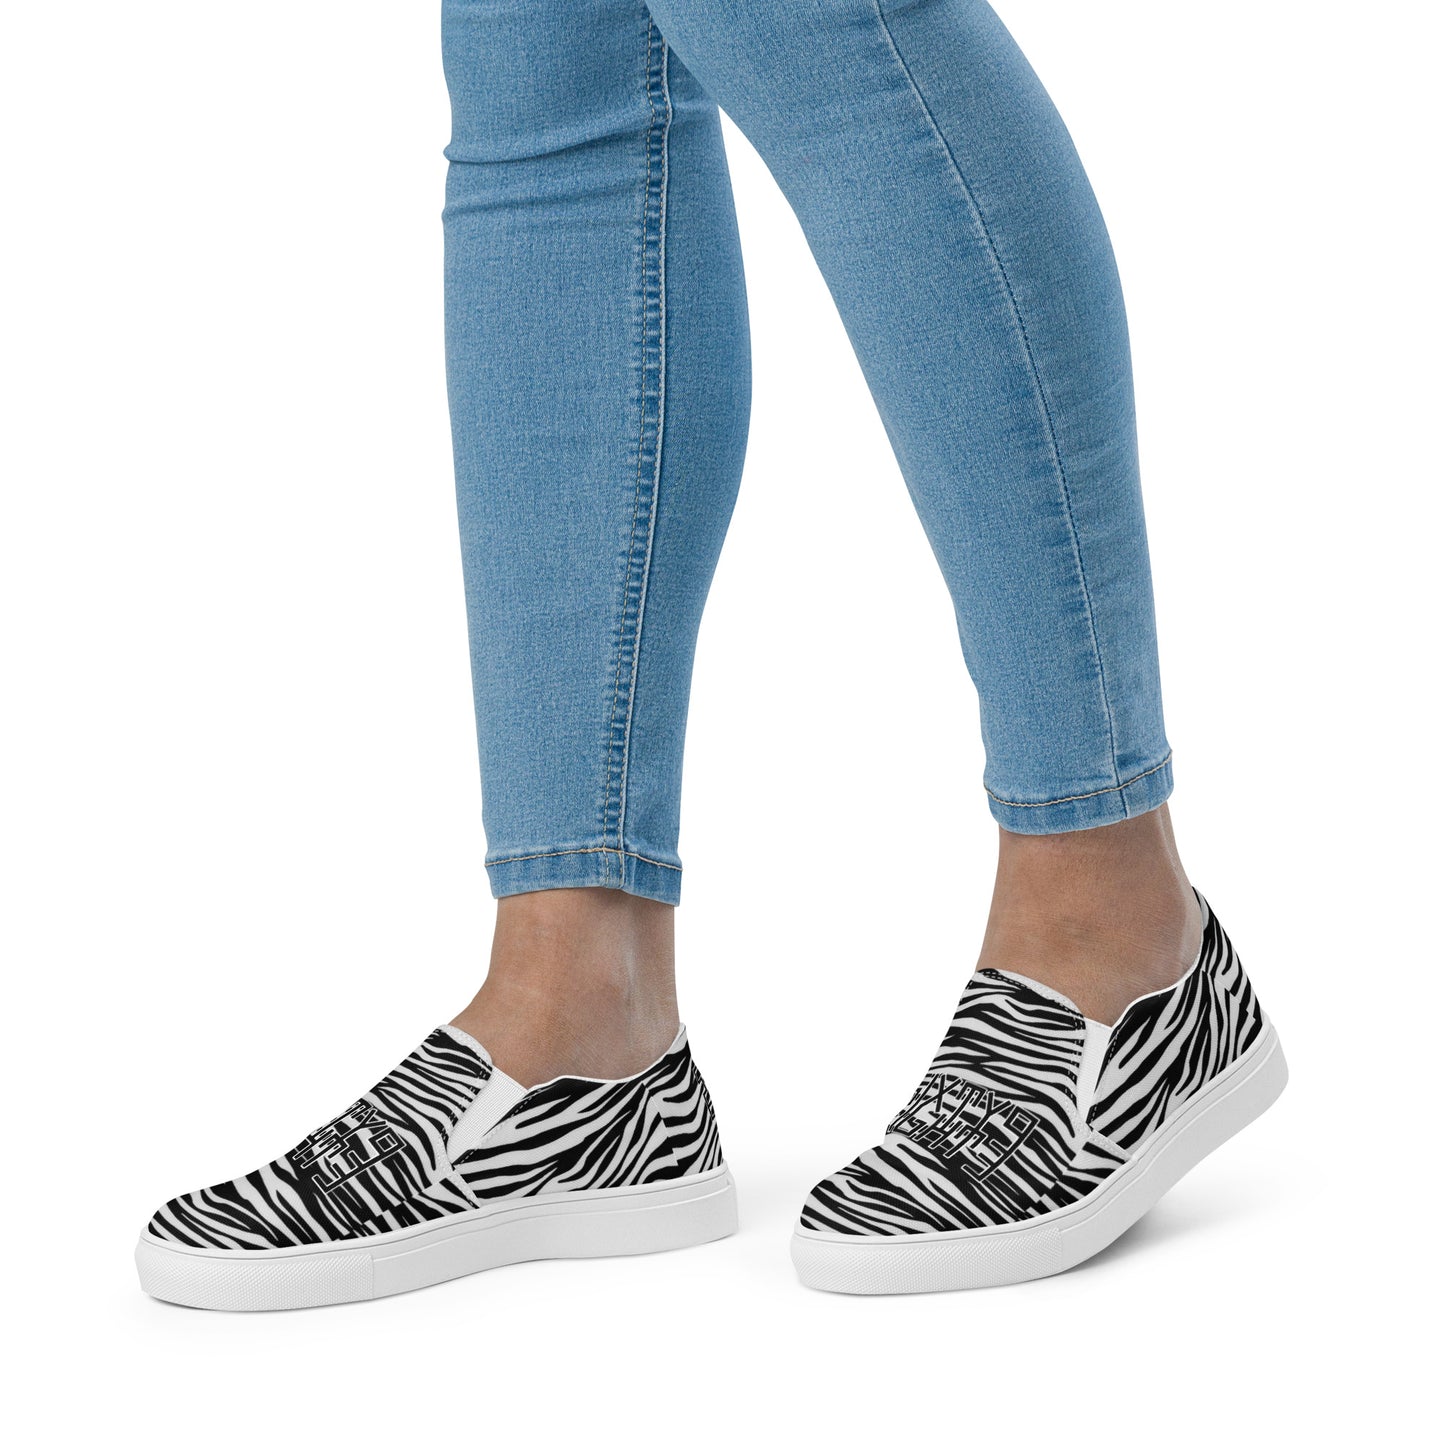 Sixty Eight 93 Logo Black & White OG Zebra Women’s Slip On Shoes